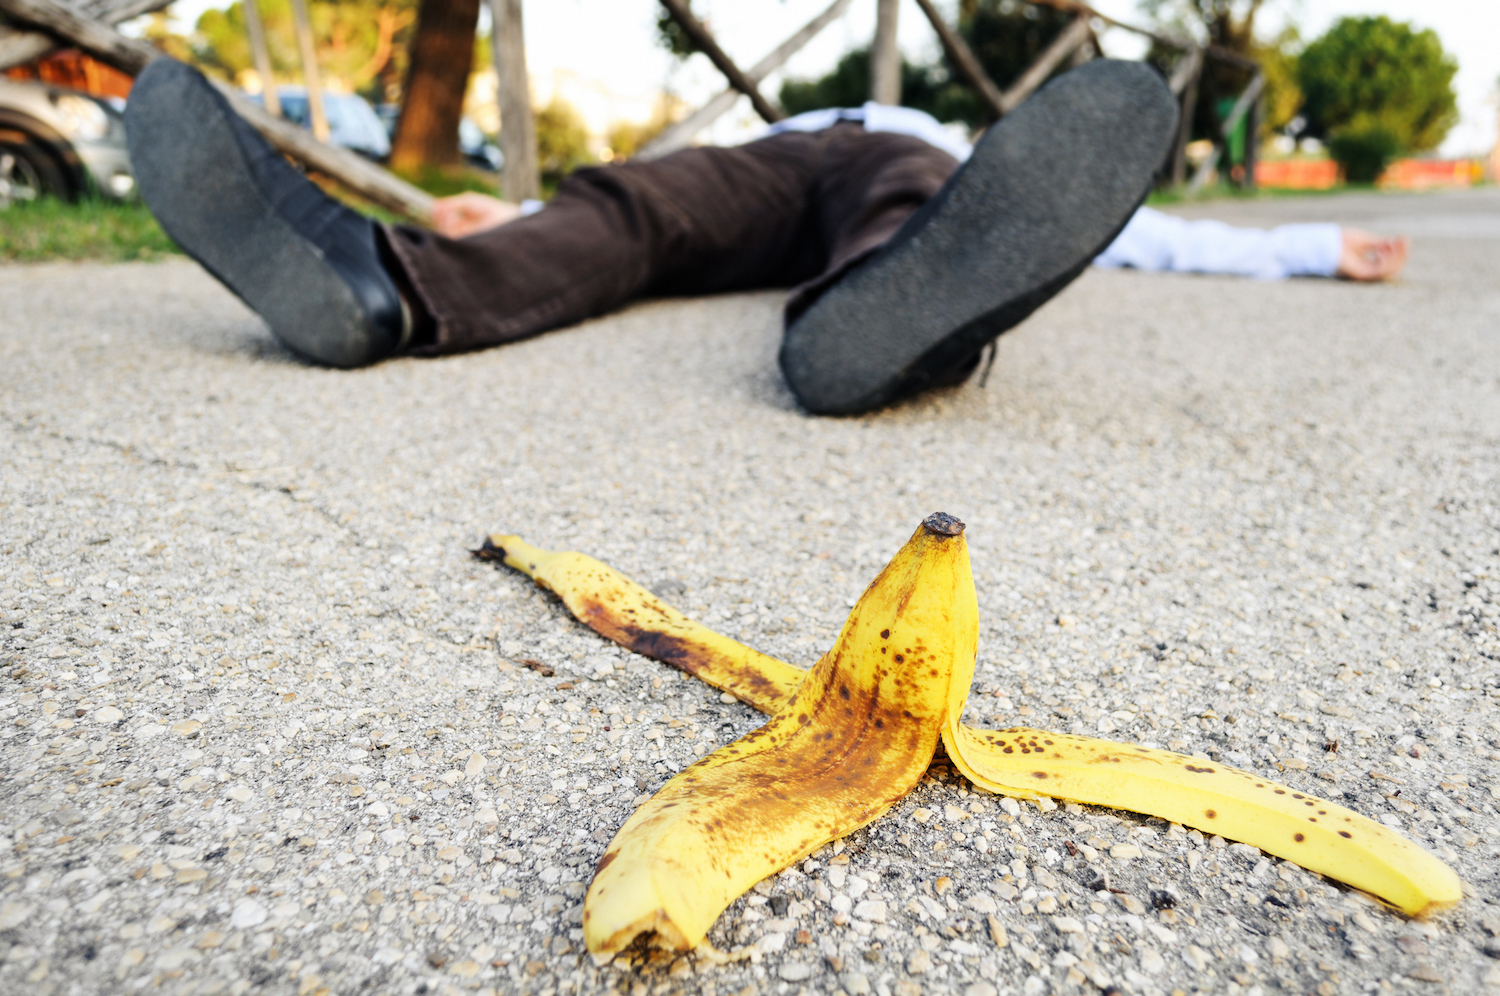 Man fell on a banana peel.